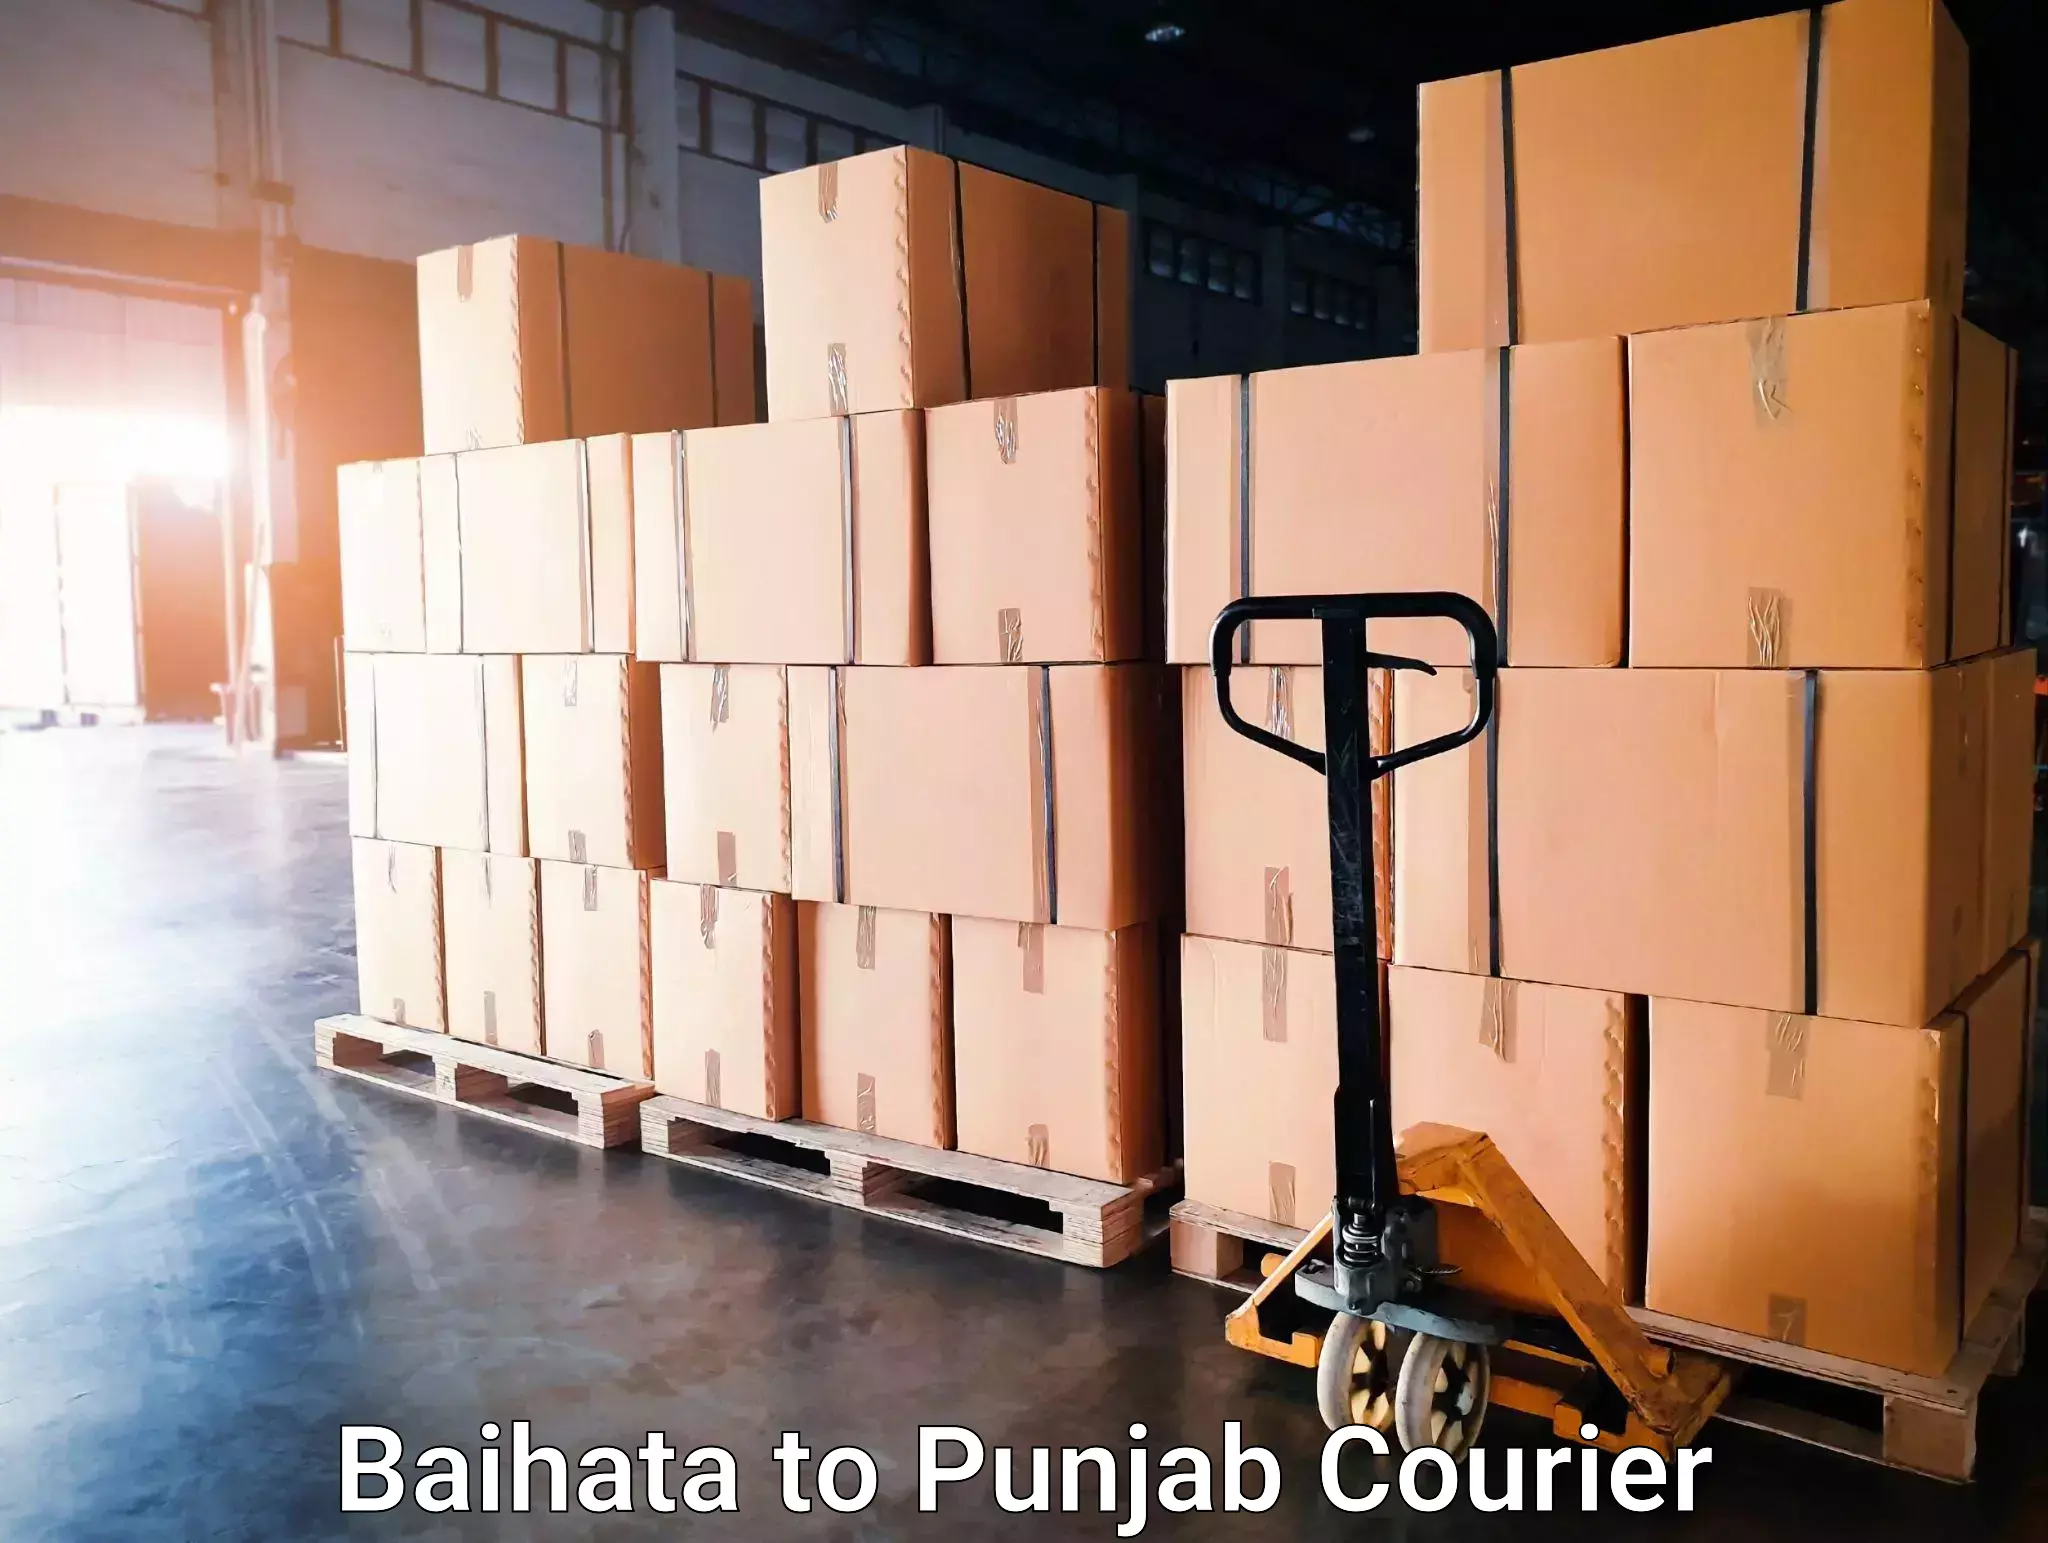 Courier app Baihata to Punjab